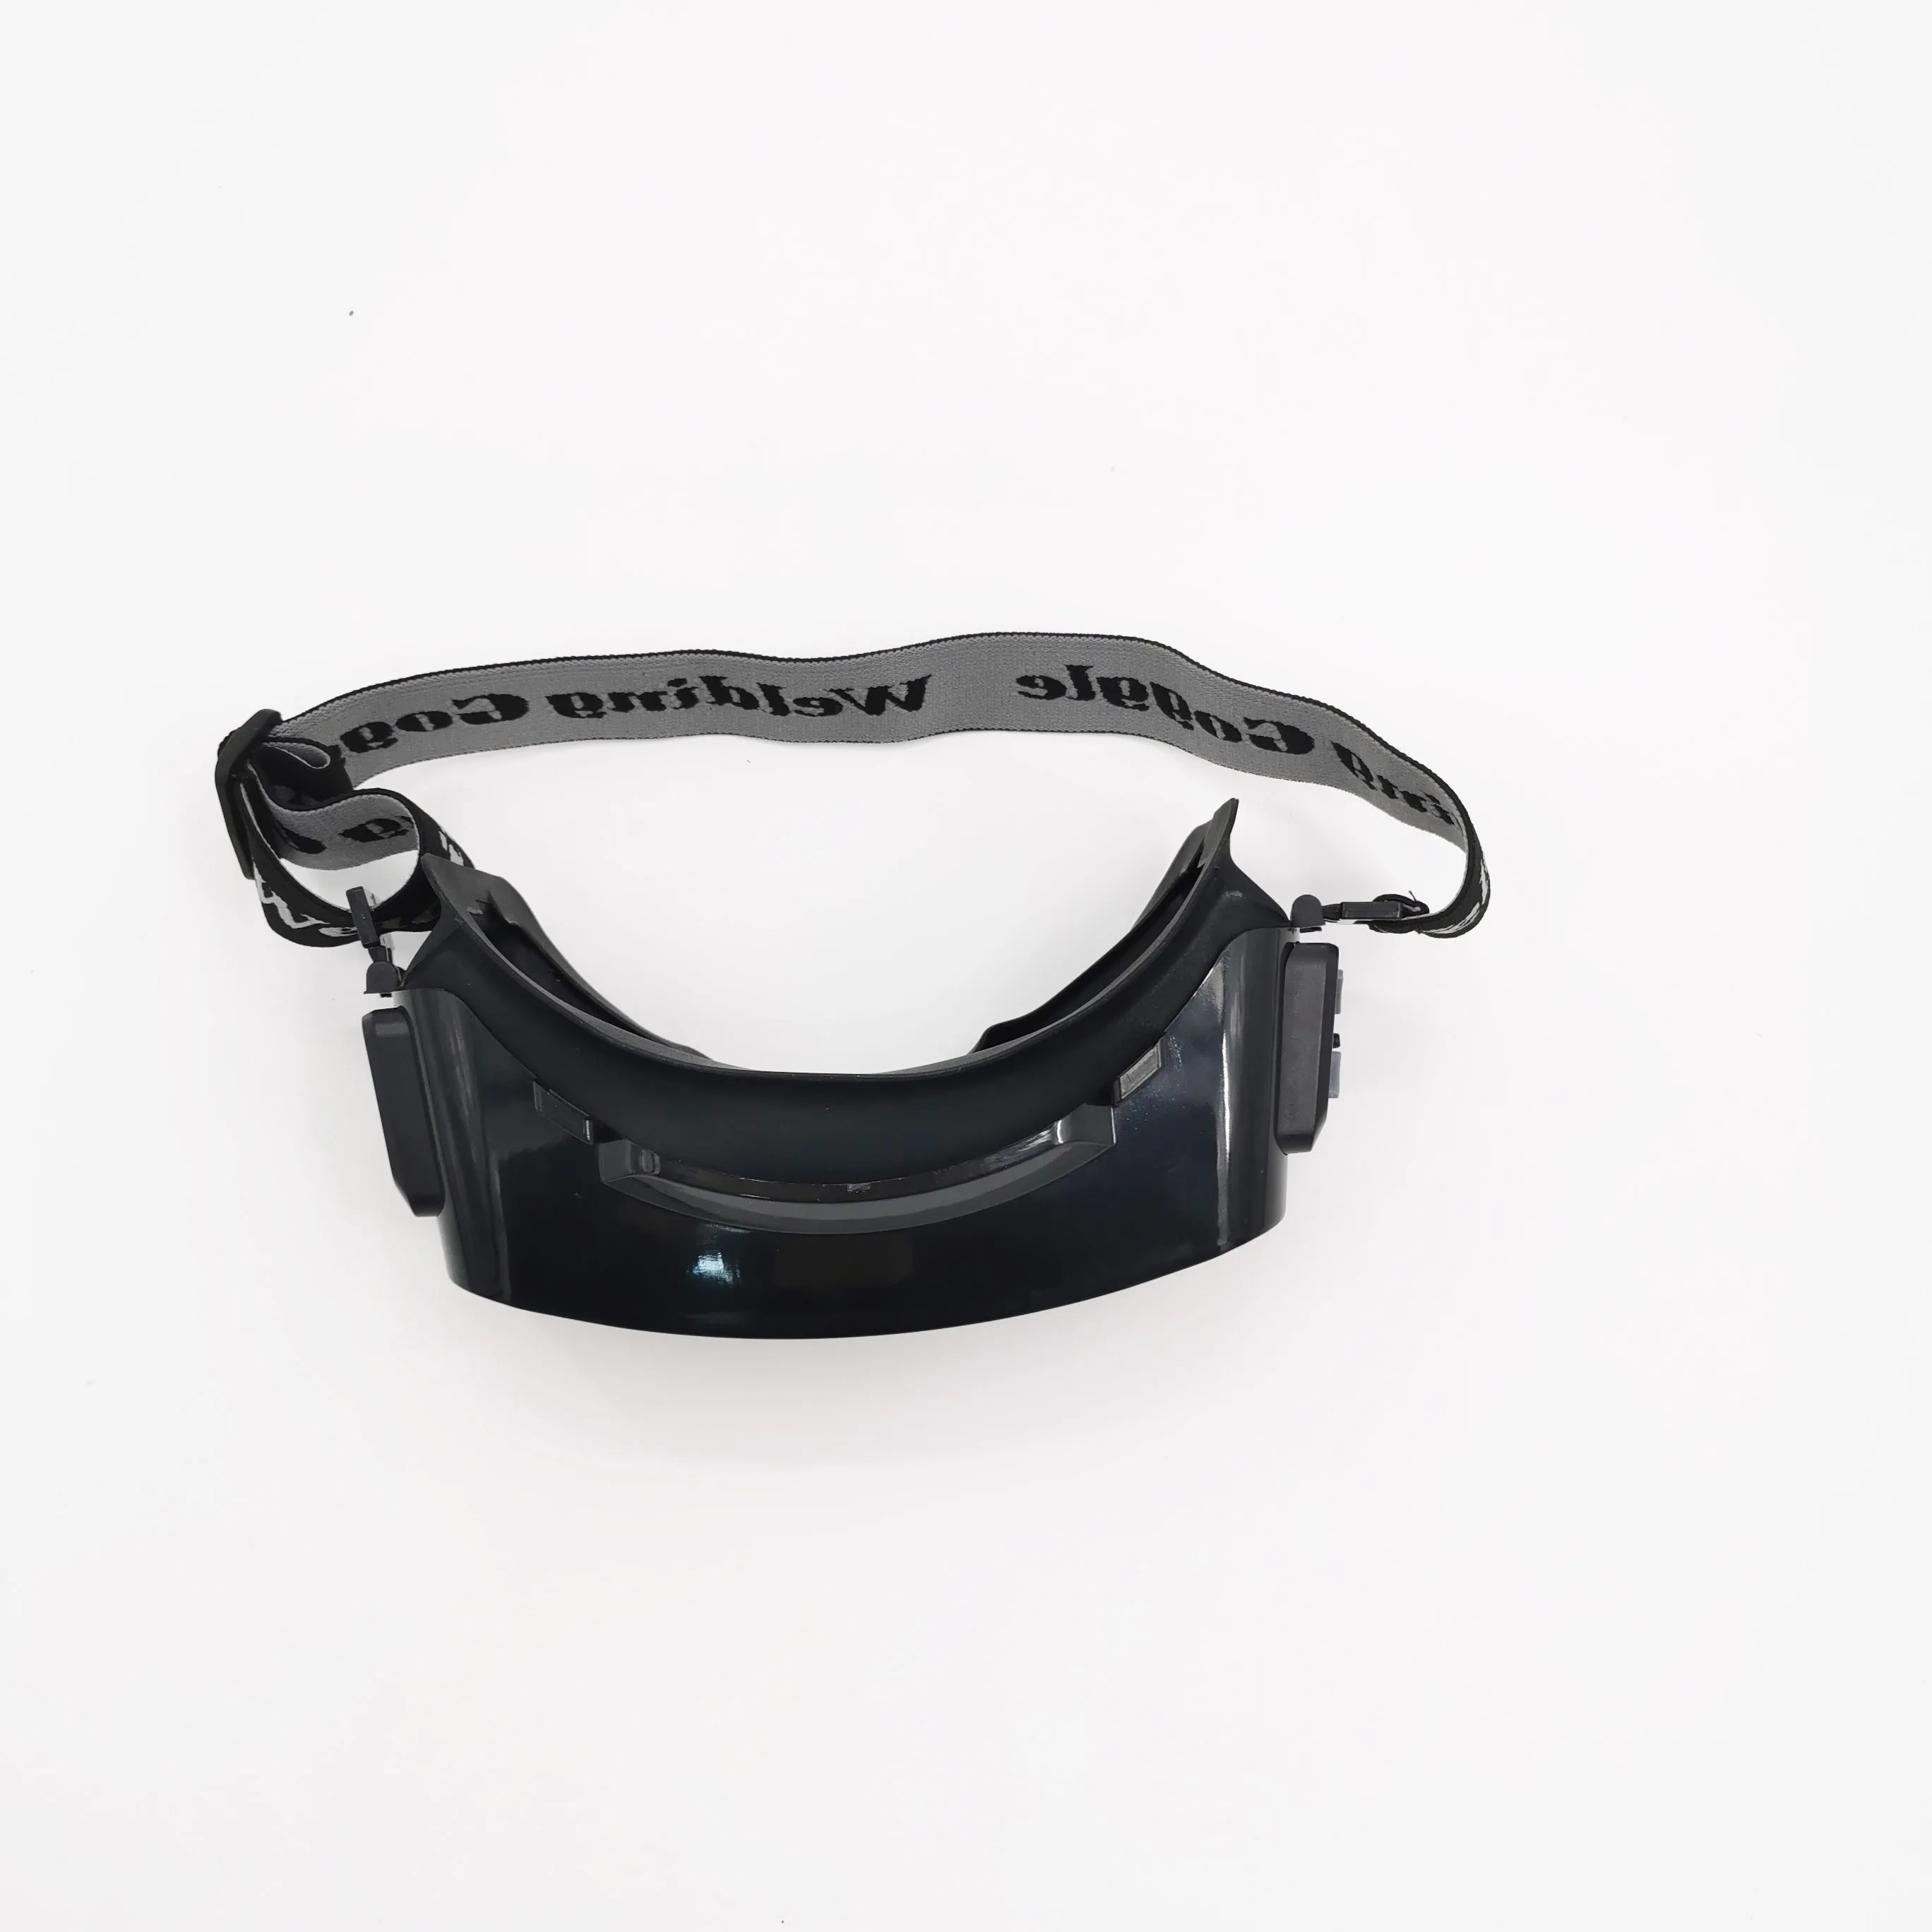 Авто затемнение антибликовые аргоновая дуговая защита глаз сварочные очки от AliExpress RU&CIS NEW